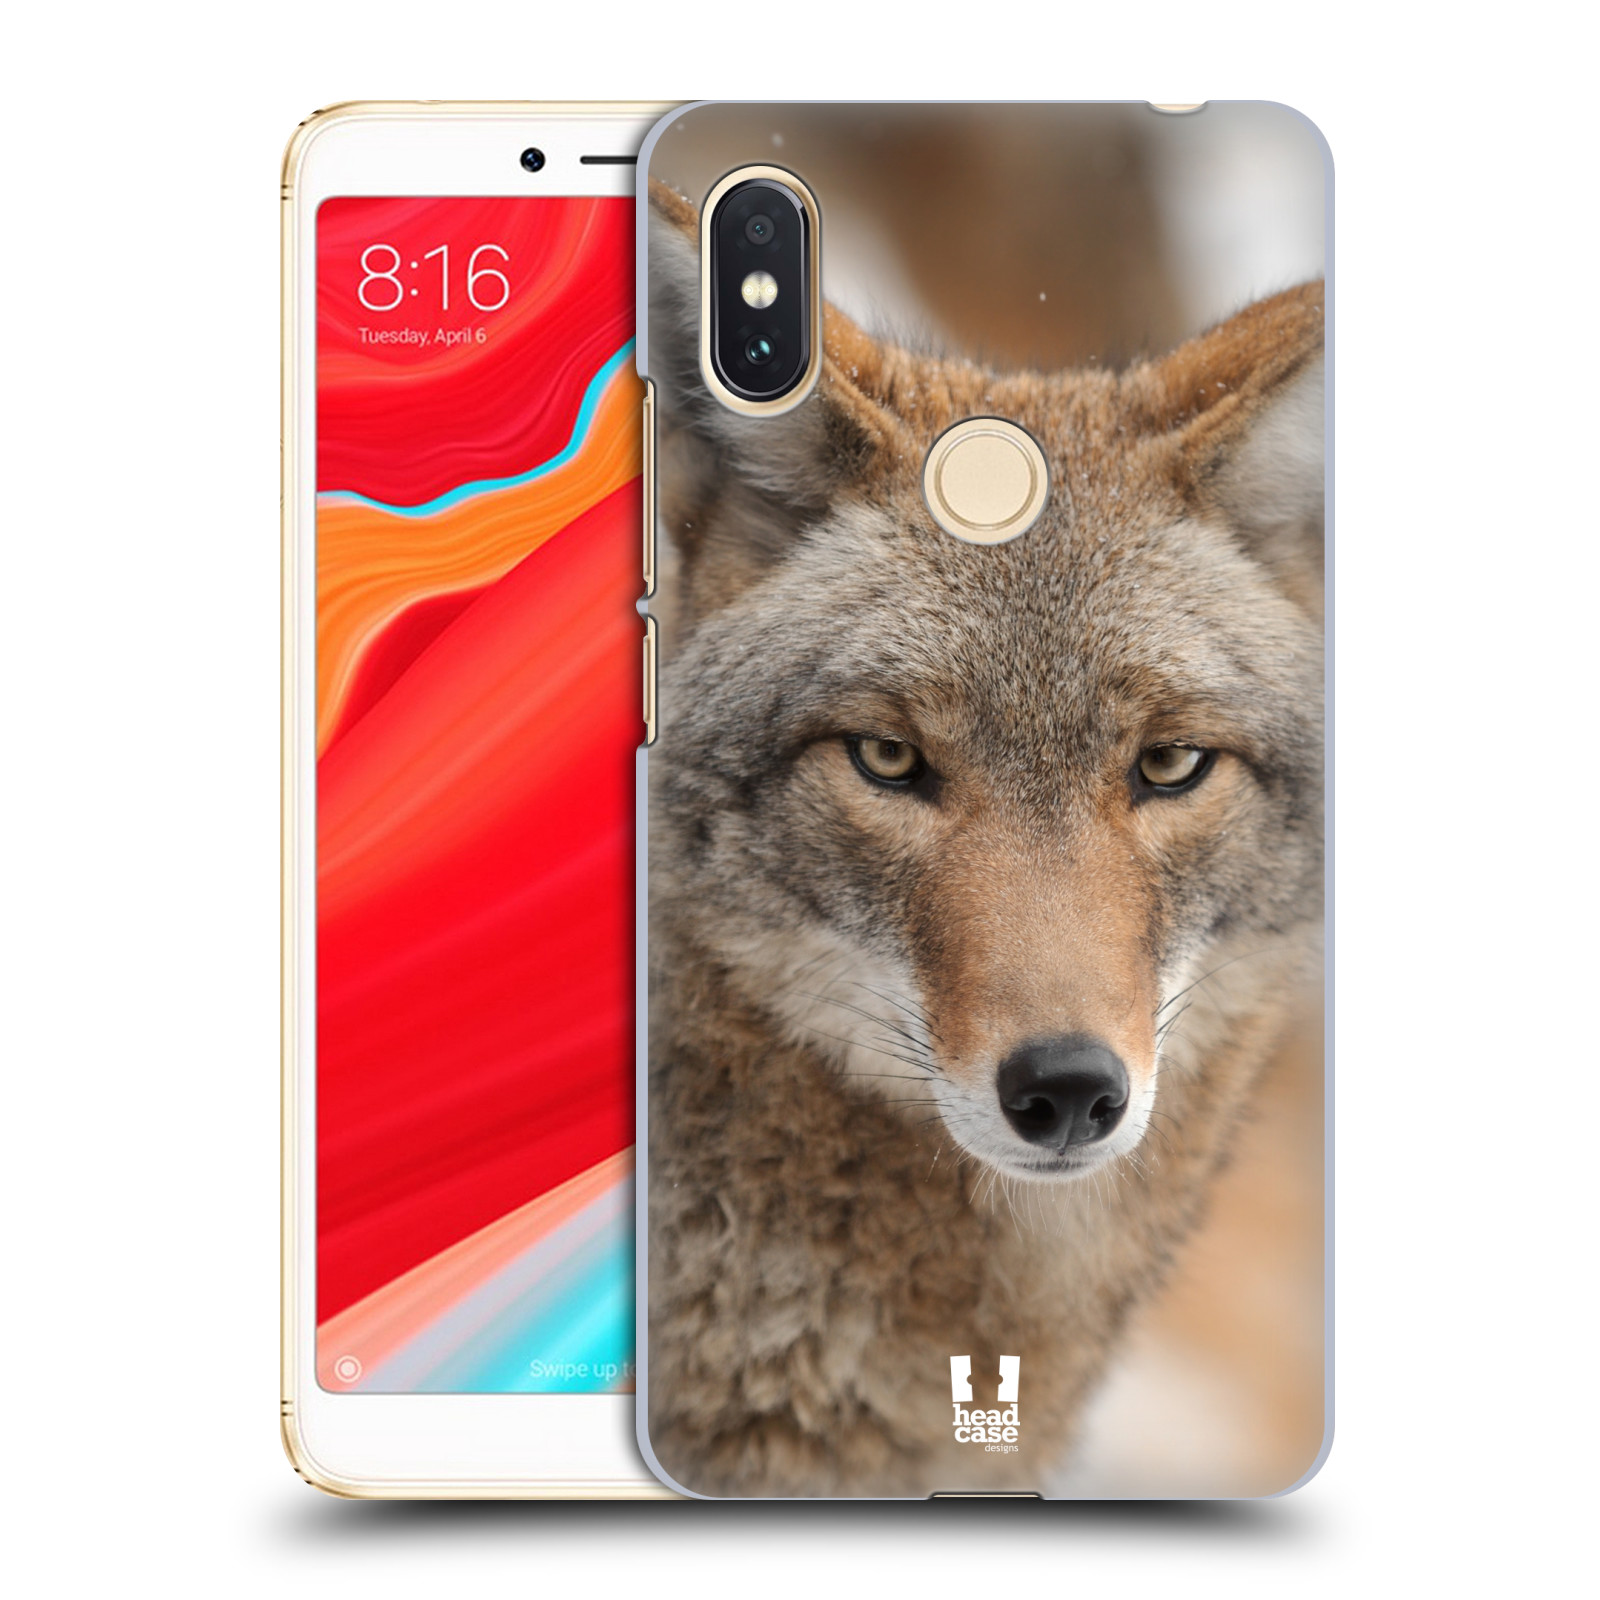 HEAD CASE plastový obal na mobil Xiaomi Redmi S2 vzor slavná zvířata foto kojot